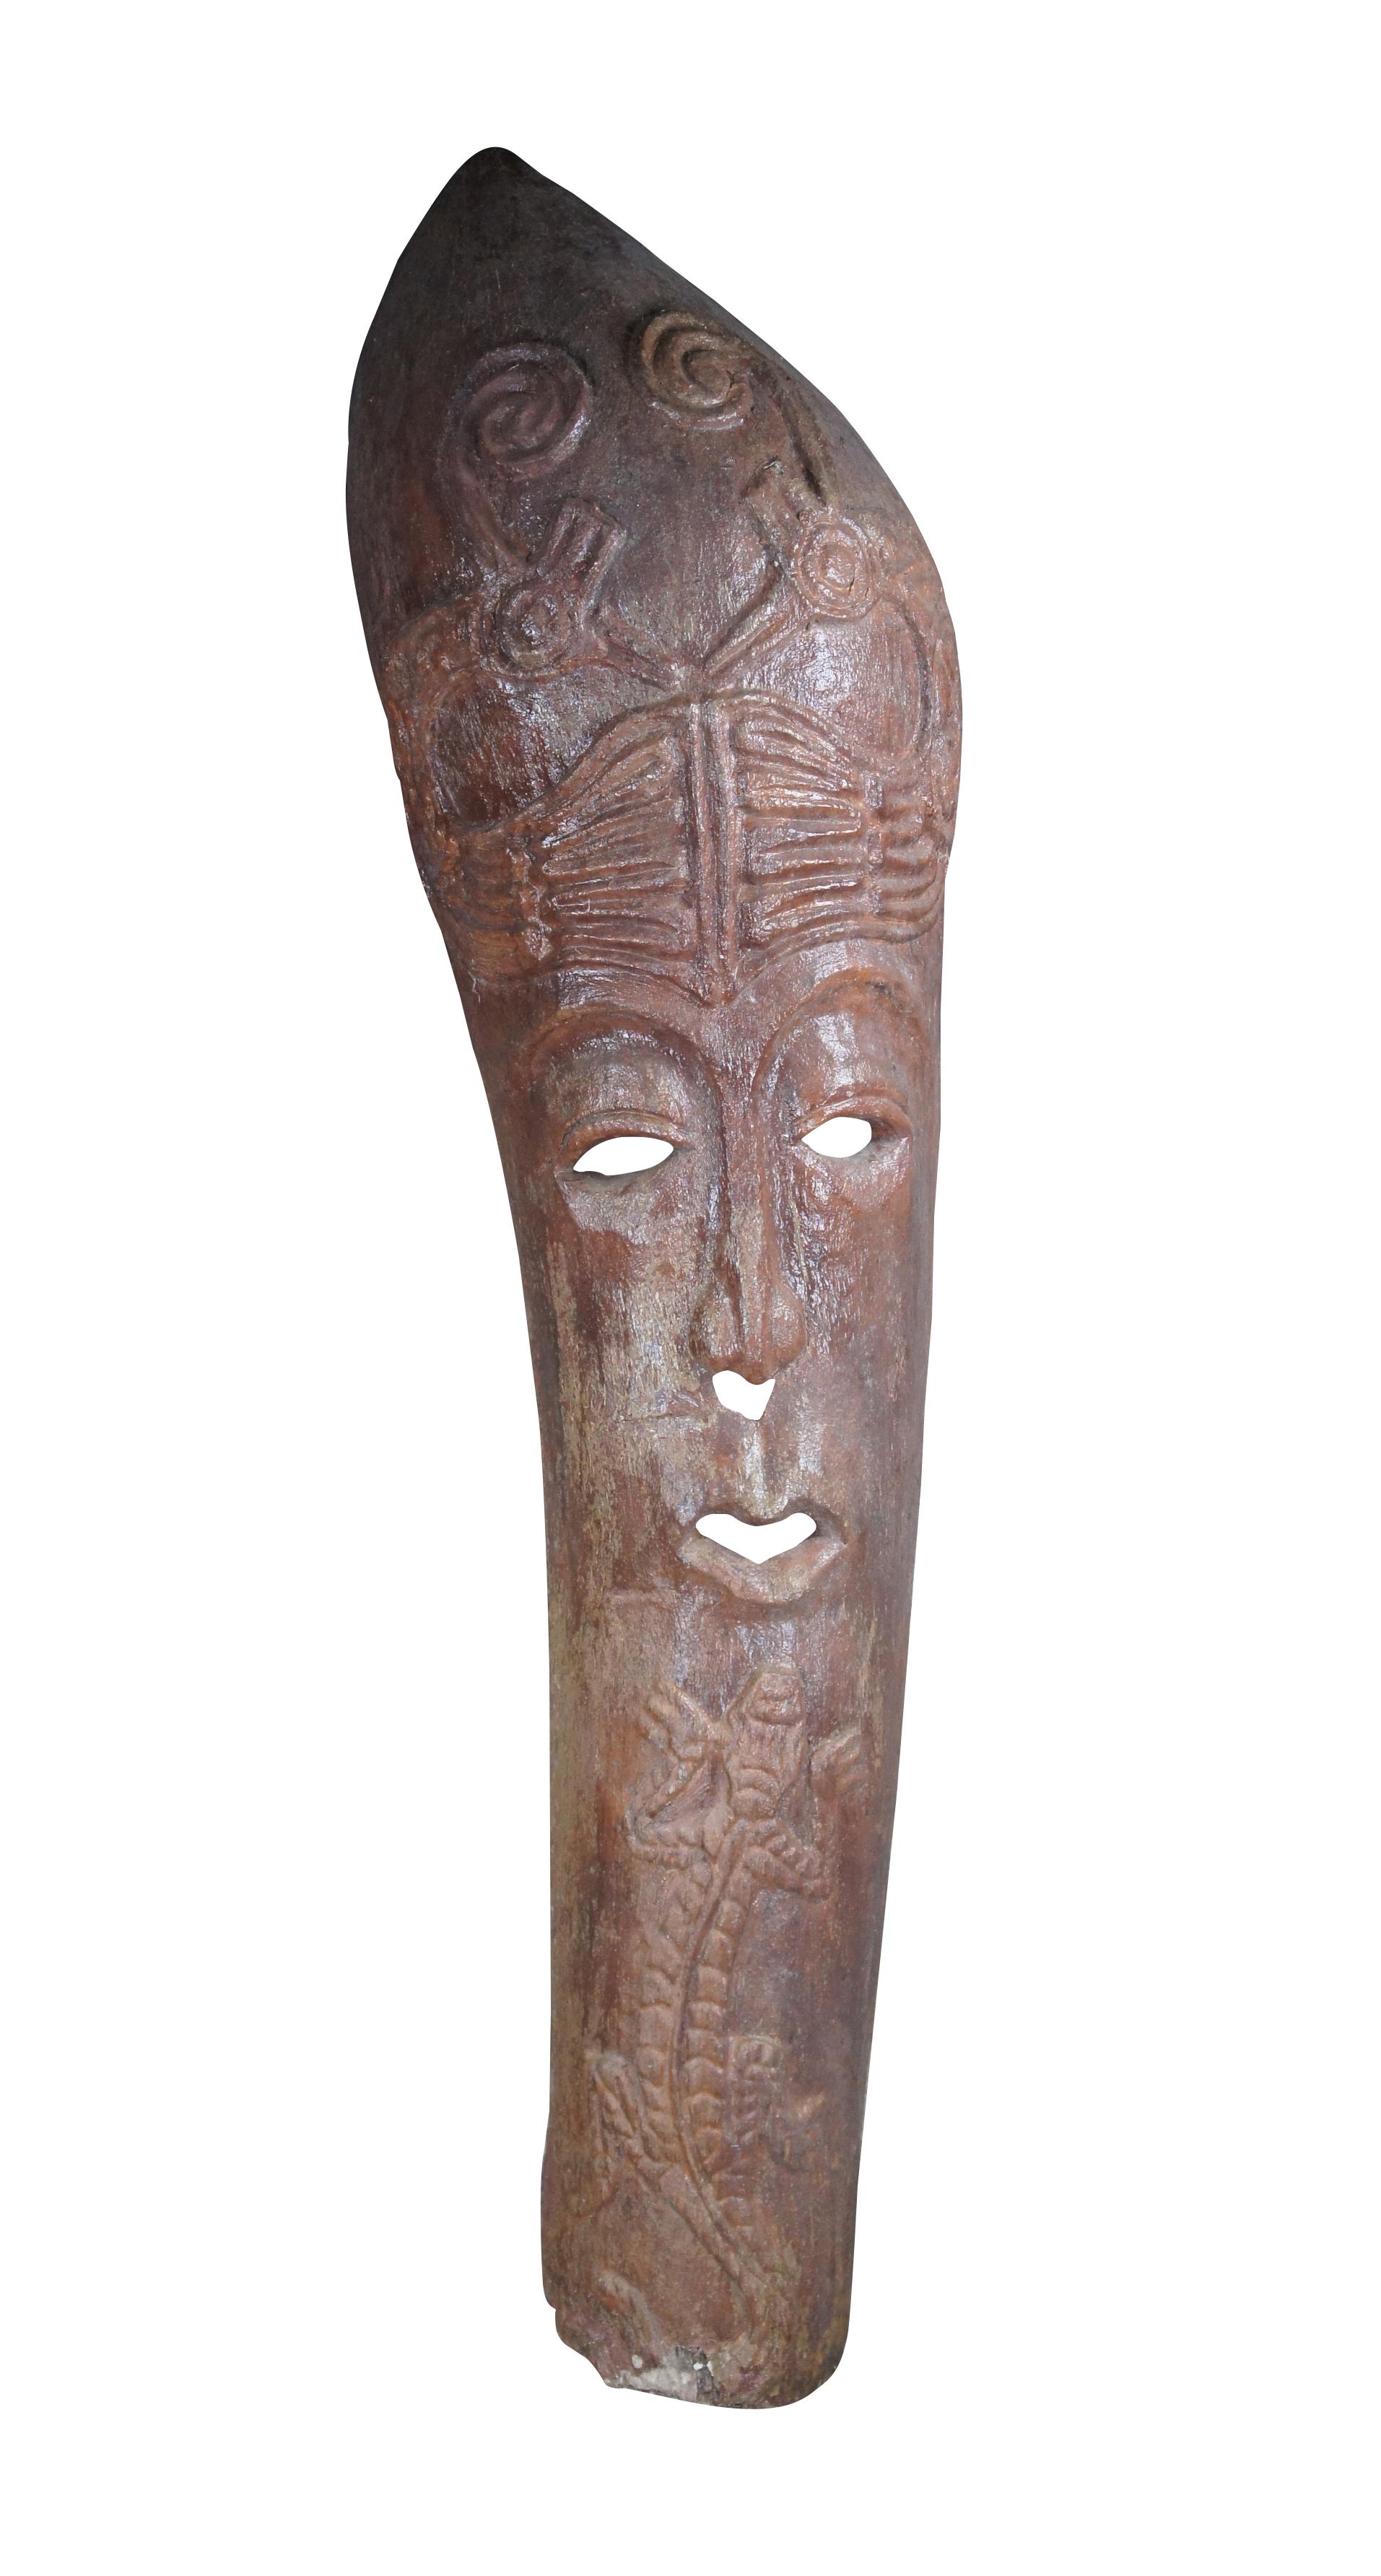 Grande statue ou masque tribal vintage de style balinais dans une hutte tiki.  Fait d'un matériau composite en forme de vieux tronc de palmier avec un grand visage allongé avec un gecko / lézard et des oiseaux.